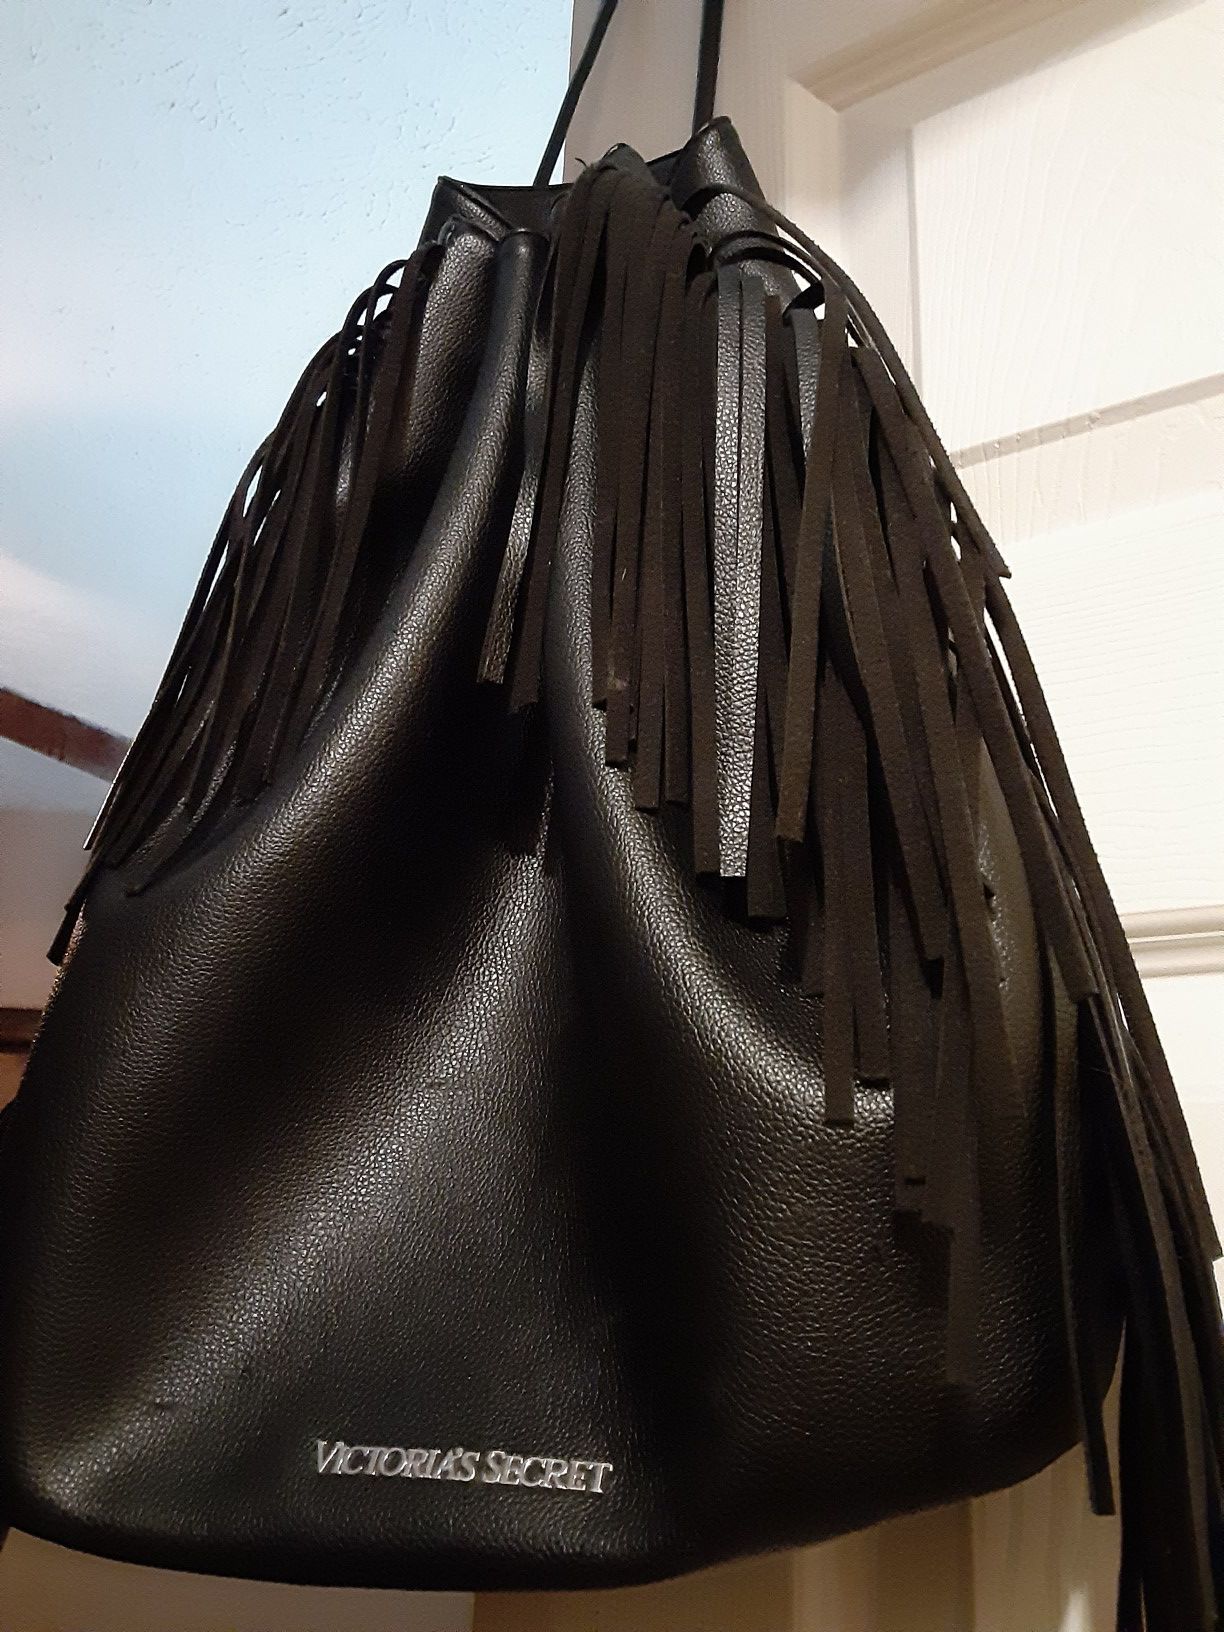 Victoria Secrets black fringed leather backpack